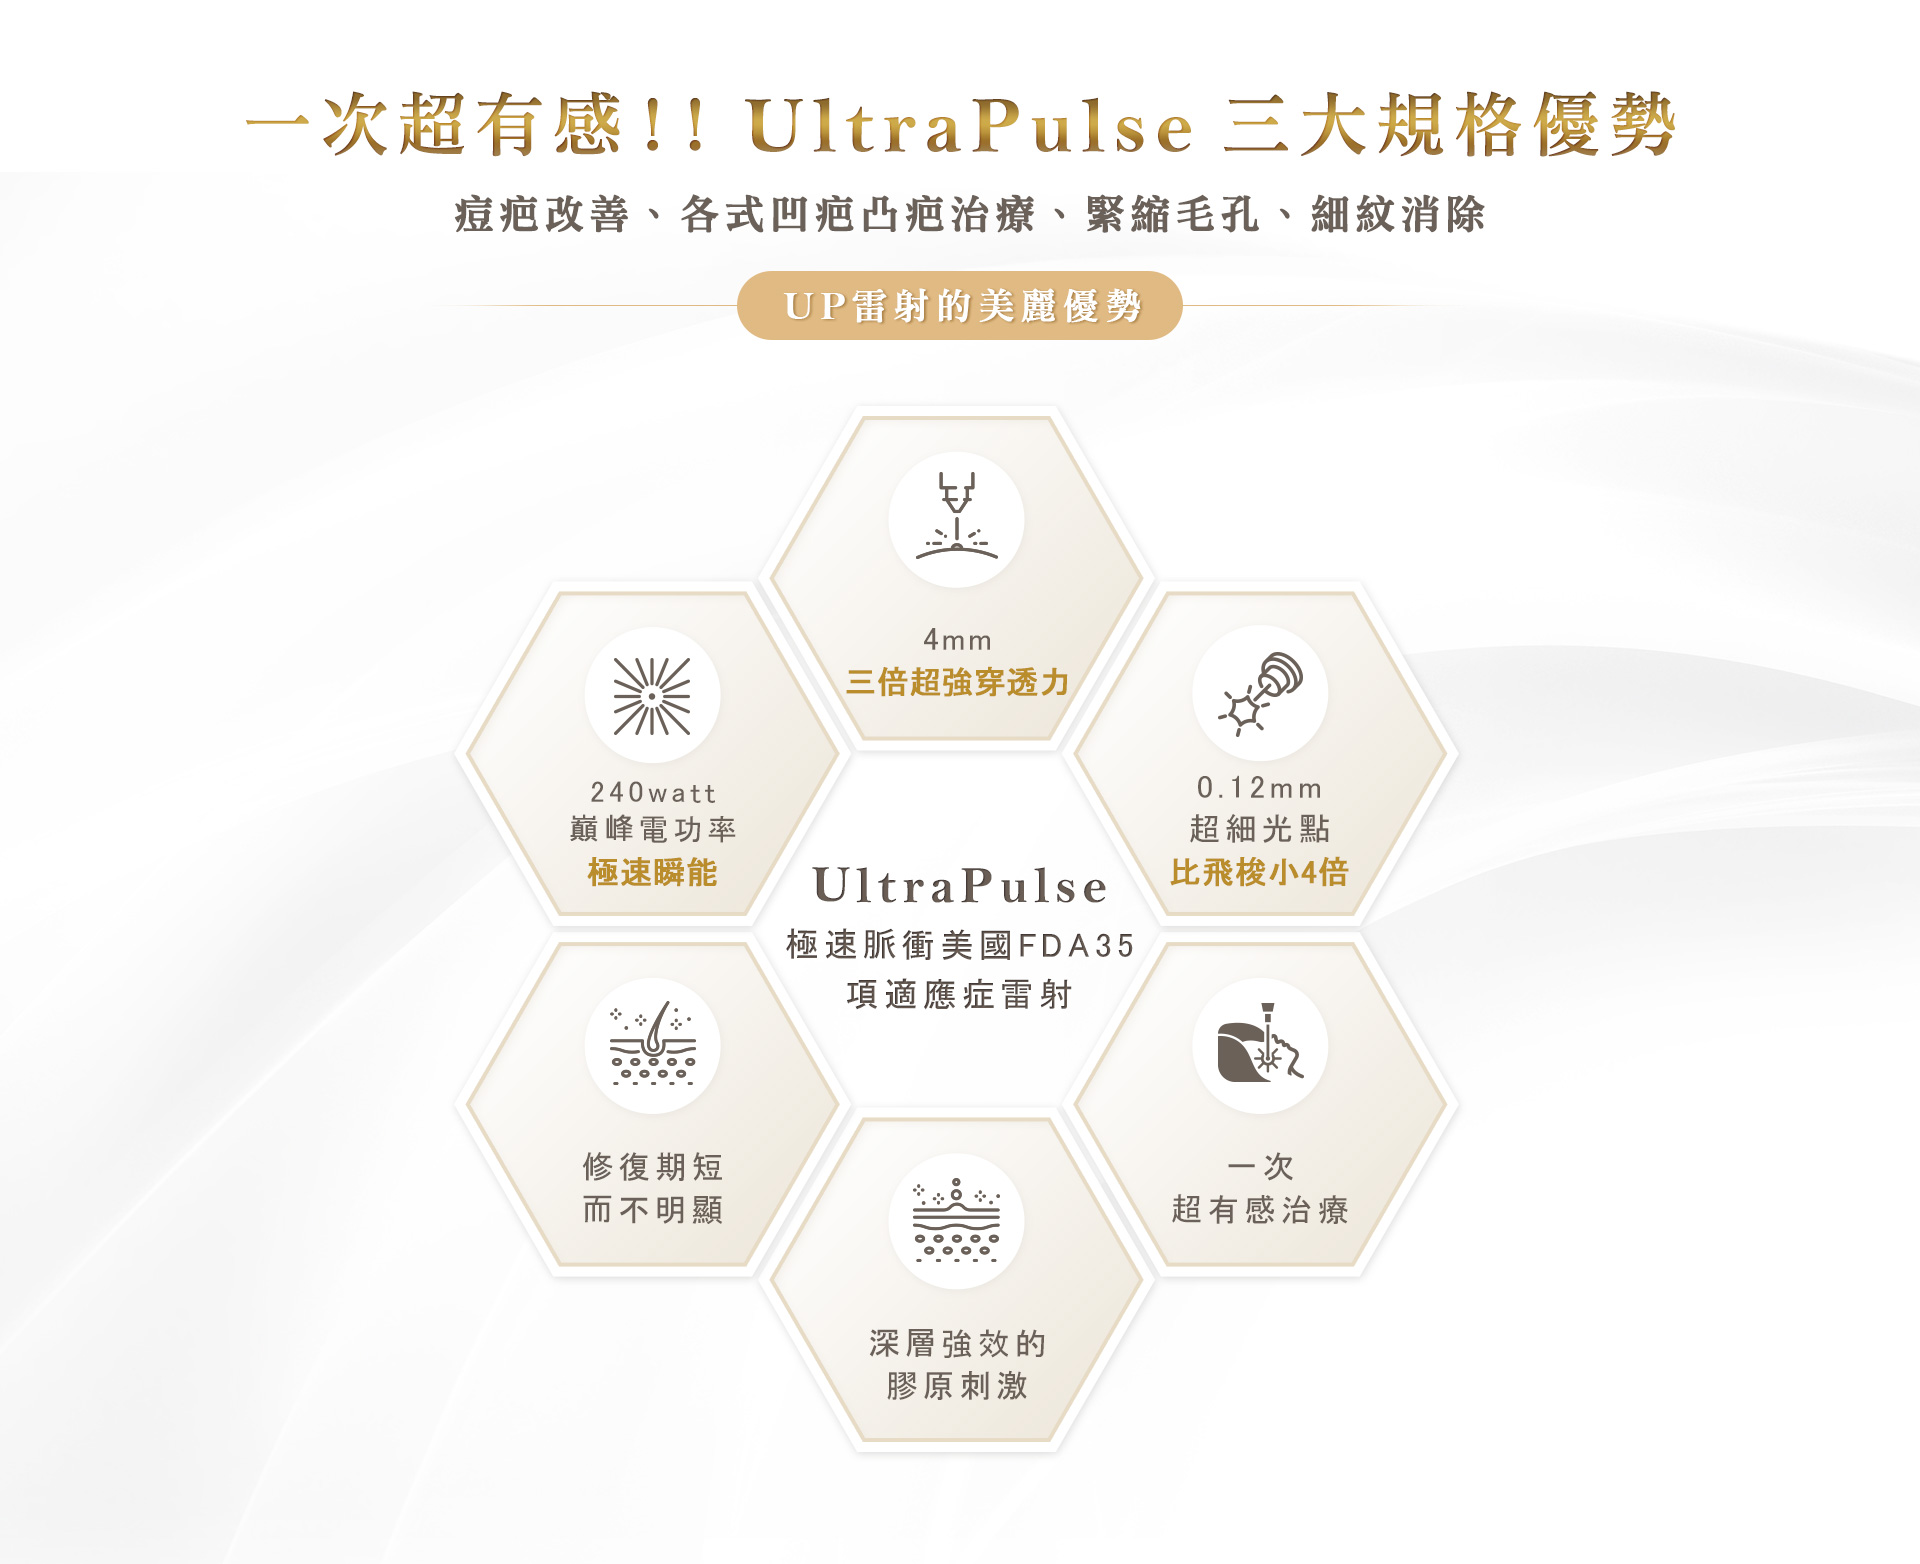 一次超有感!! UltraPulse: UP雷射除疤，消除痘疤，改善毛孔，細紋治療新利器!!!